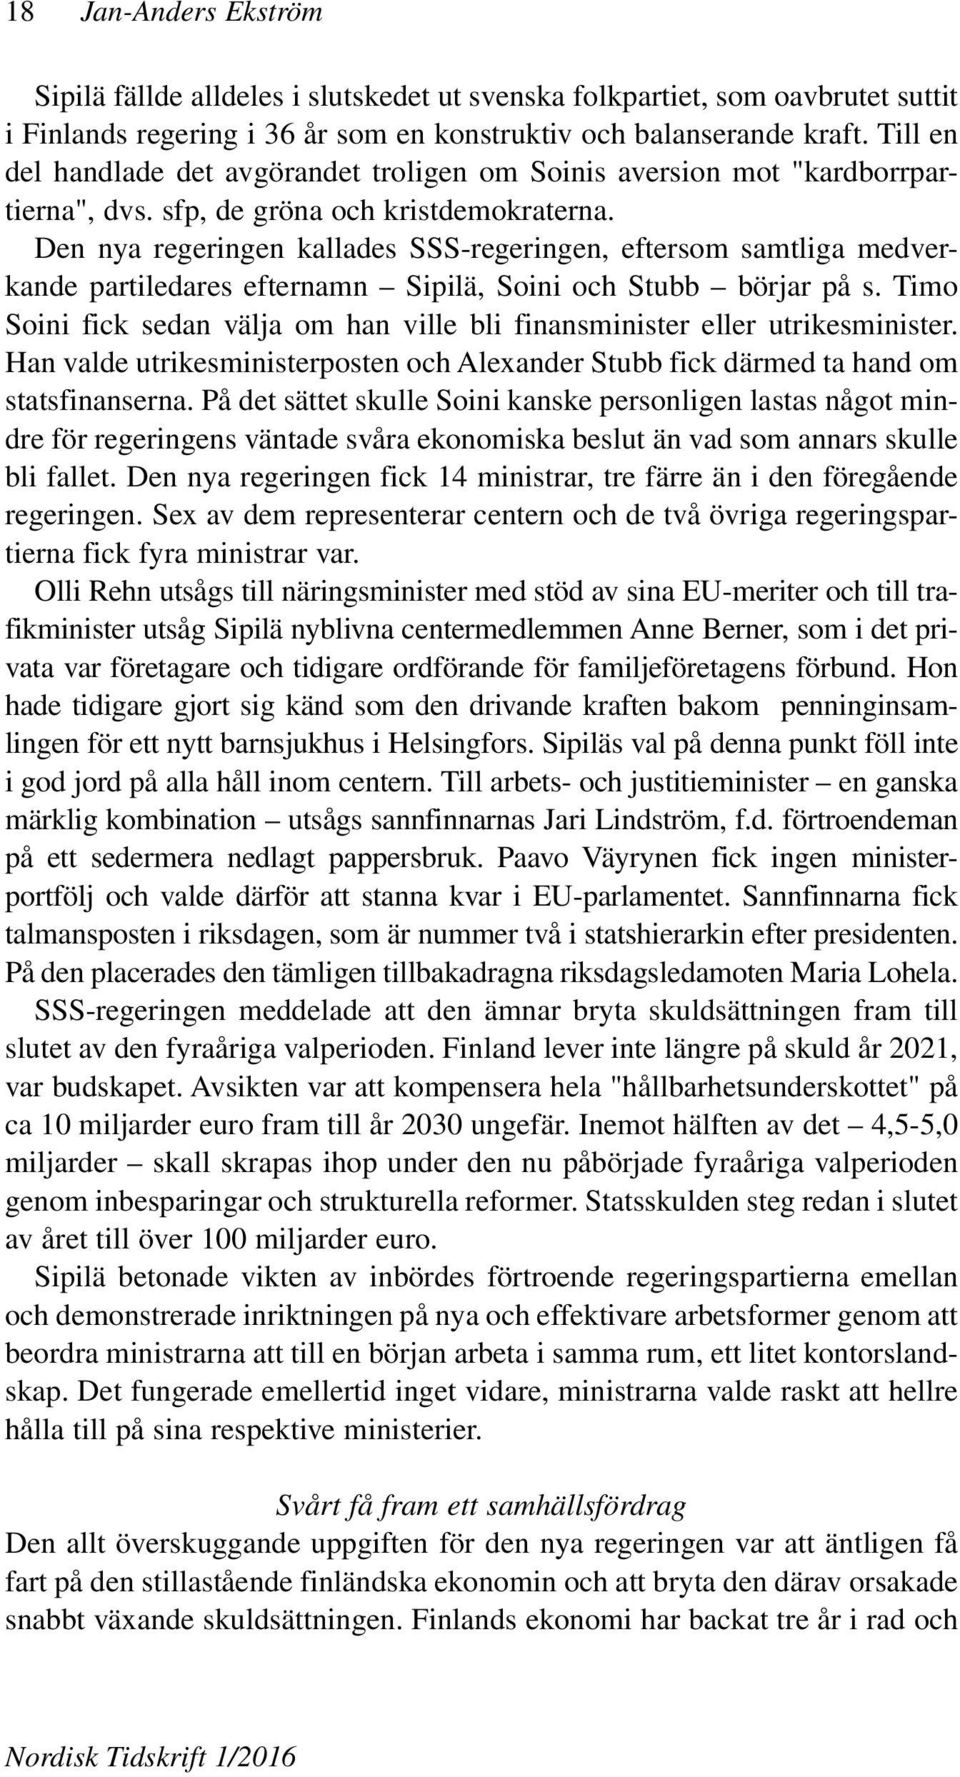 Den nya regeringen kallades SSS-regeringen, eftersom samtliga medverkande partiledares efternamn Sipilä, Soini och Stubb börjar på s.